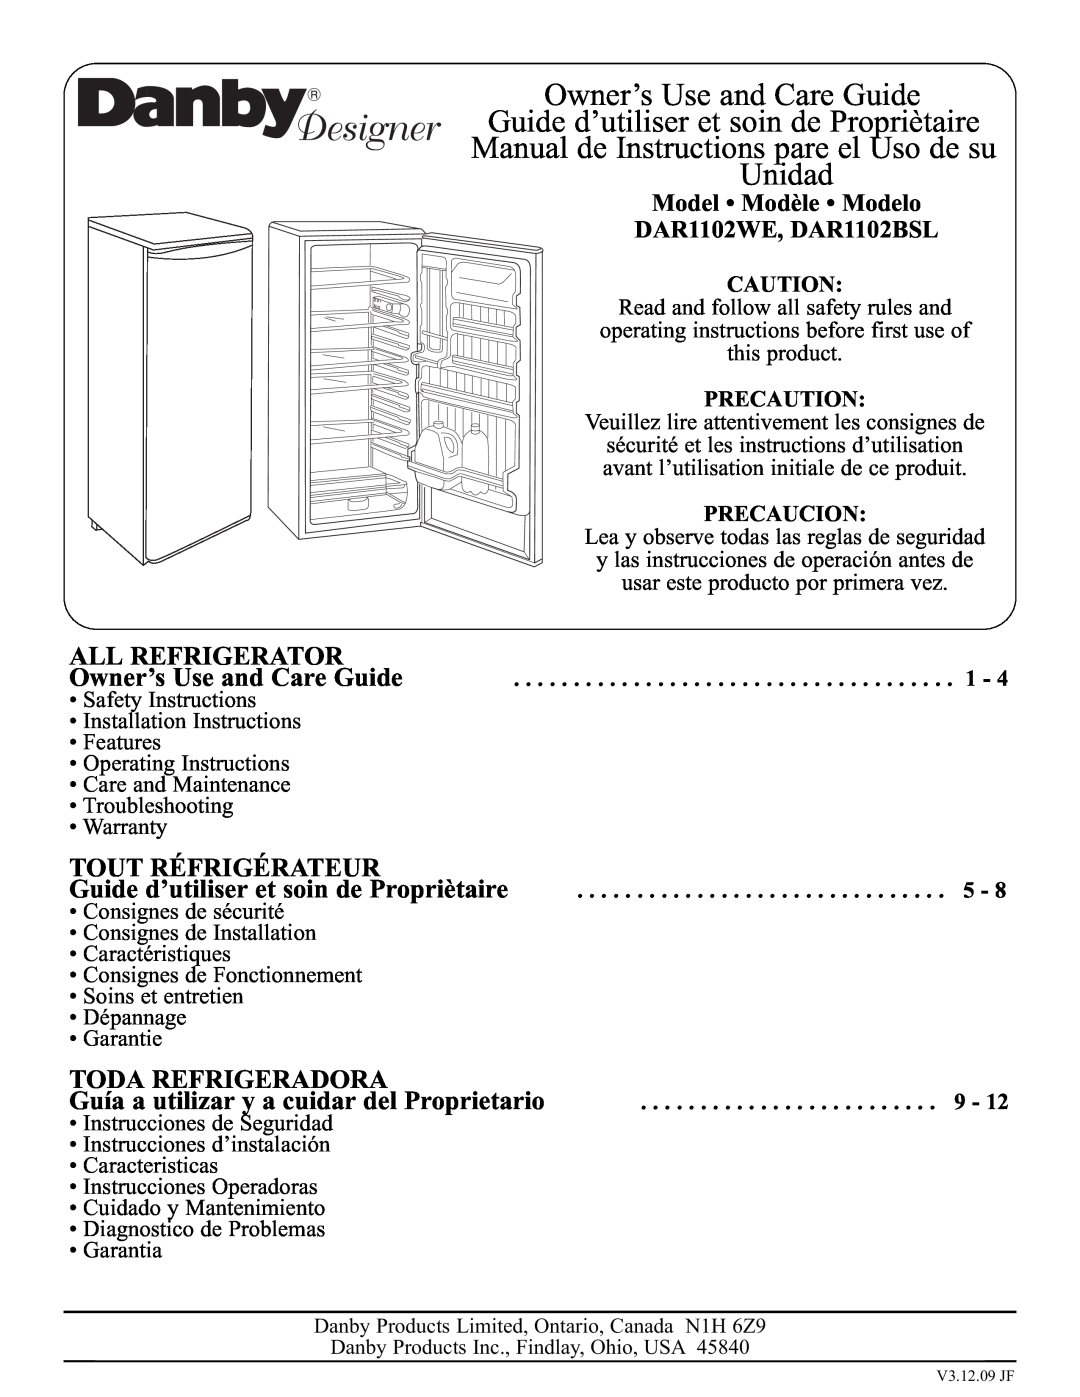 Danby DAR1102WE installation instructions All Refrigerator, Tout Réfrigérateur, Toda Refrigeradora, Precaution, Precaucion 